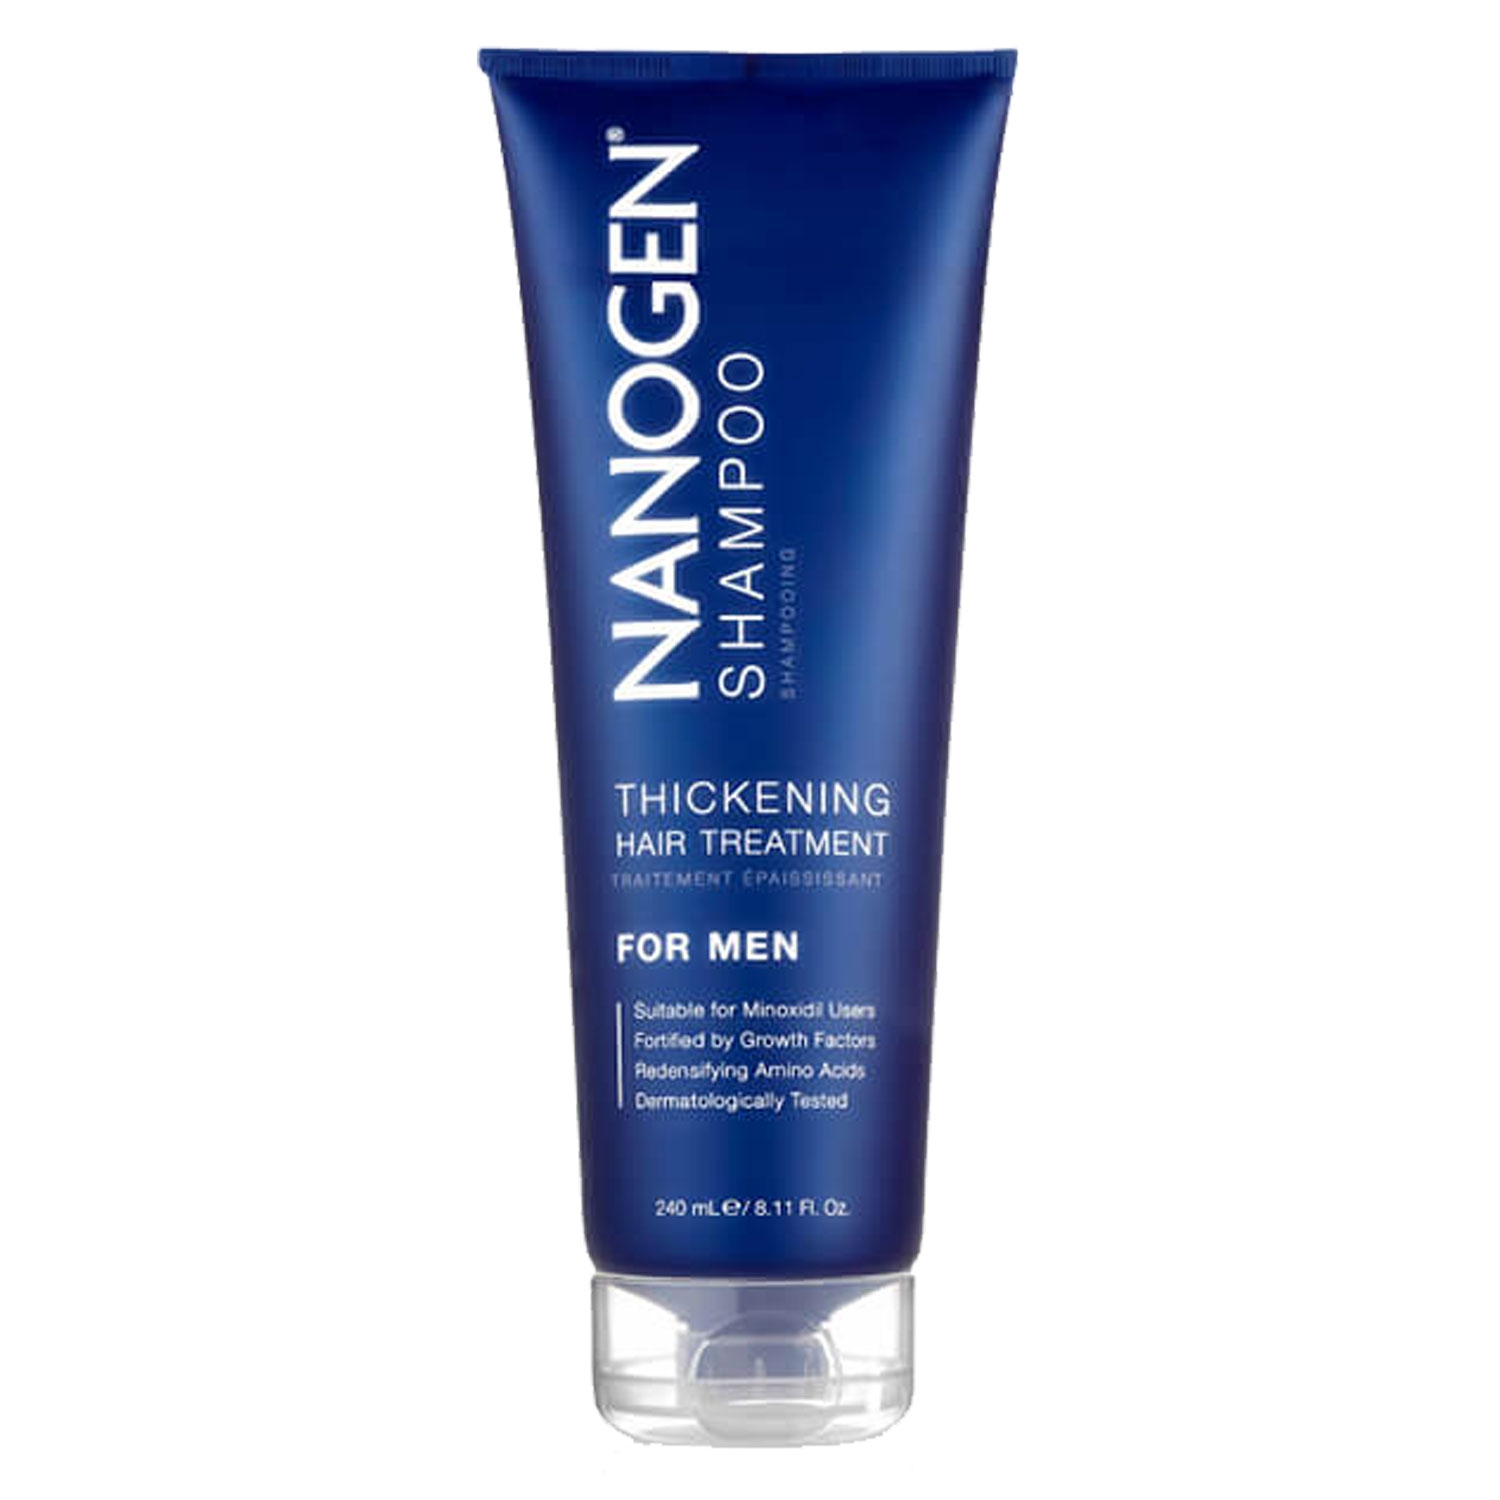 Produktbild von Nanogen - Thickening Treatment Shampoo For Men